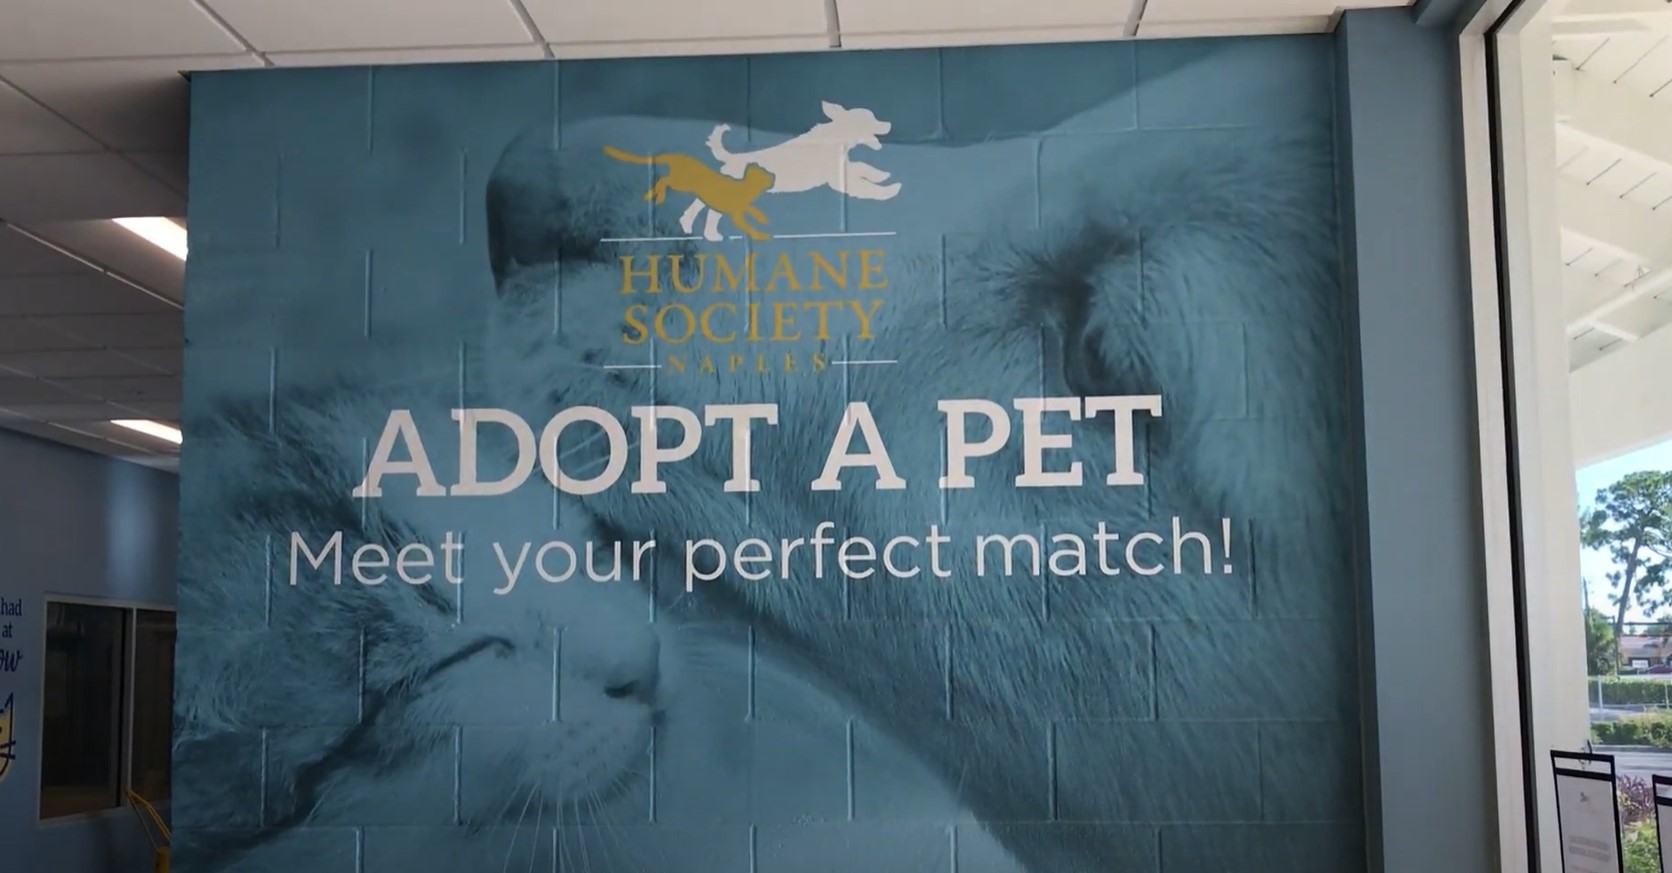 Virtual Tour of Humane Society Naples von Arx Adoption Center